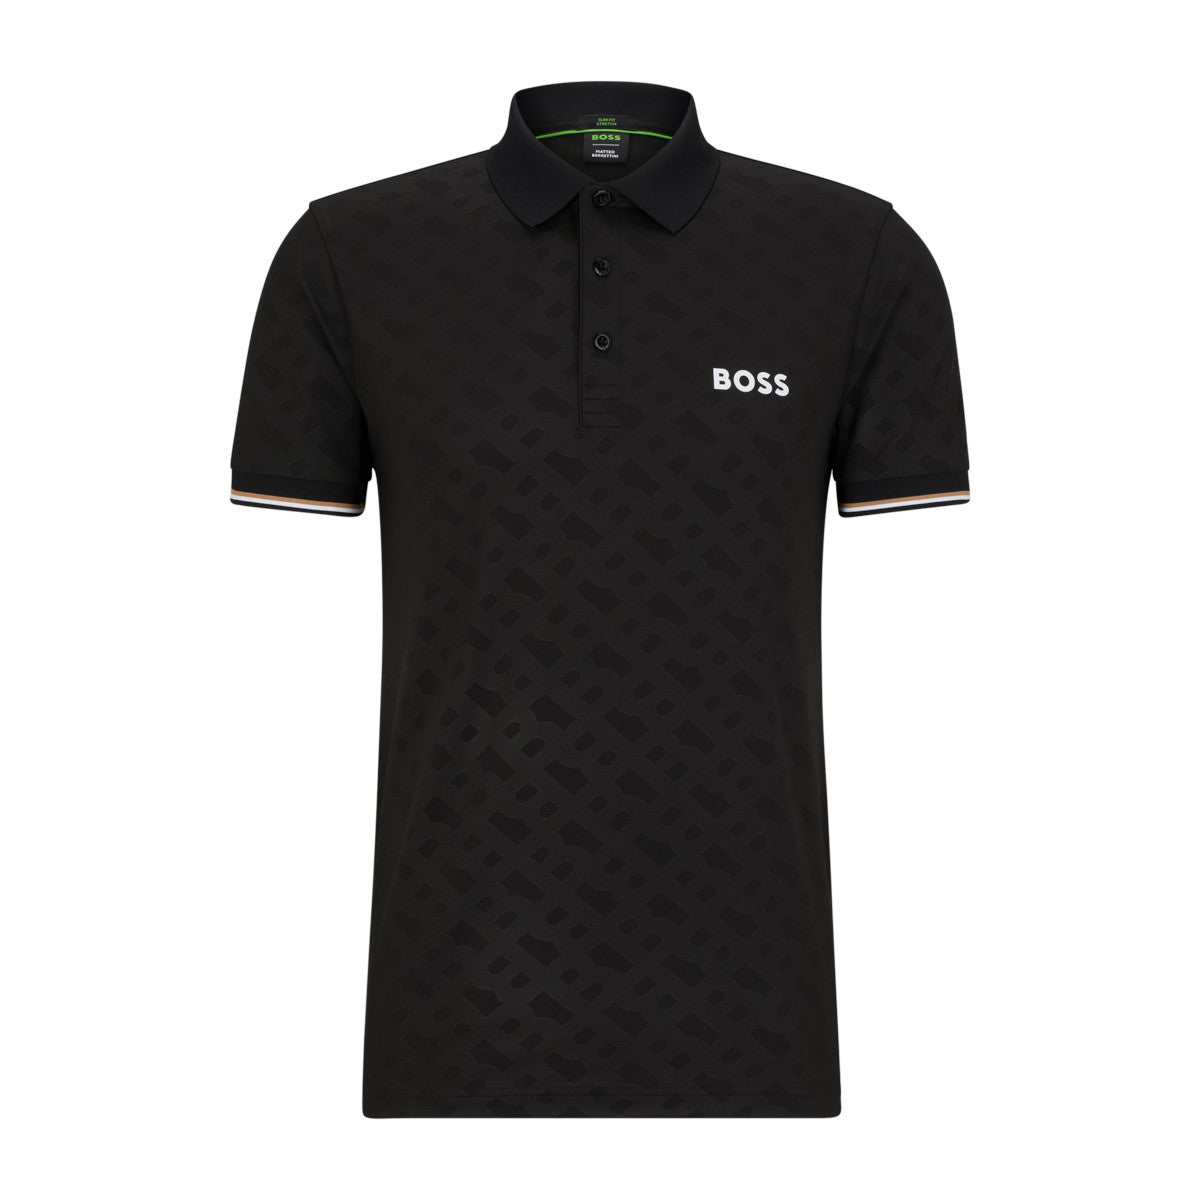 BOSS Green Patteo MB Polo Shirt 001 Black